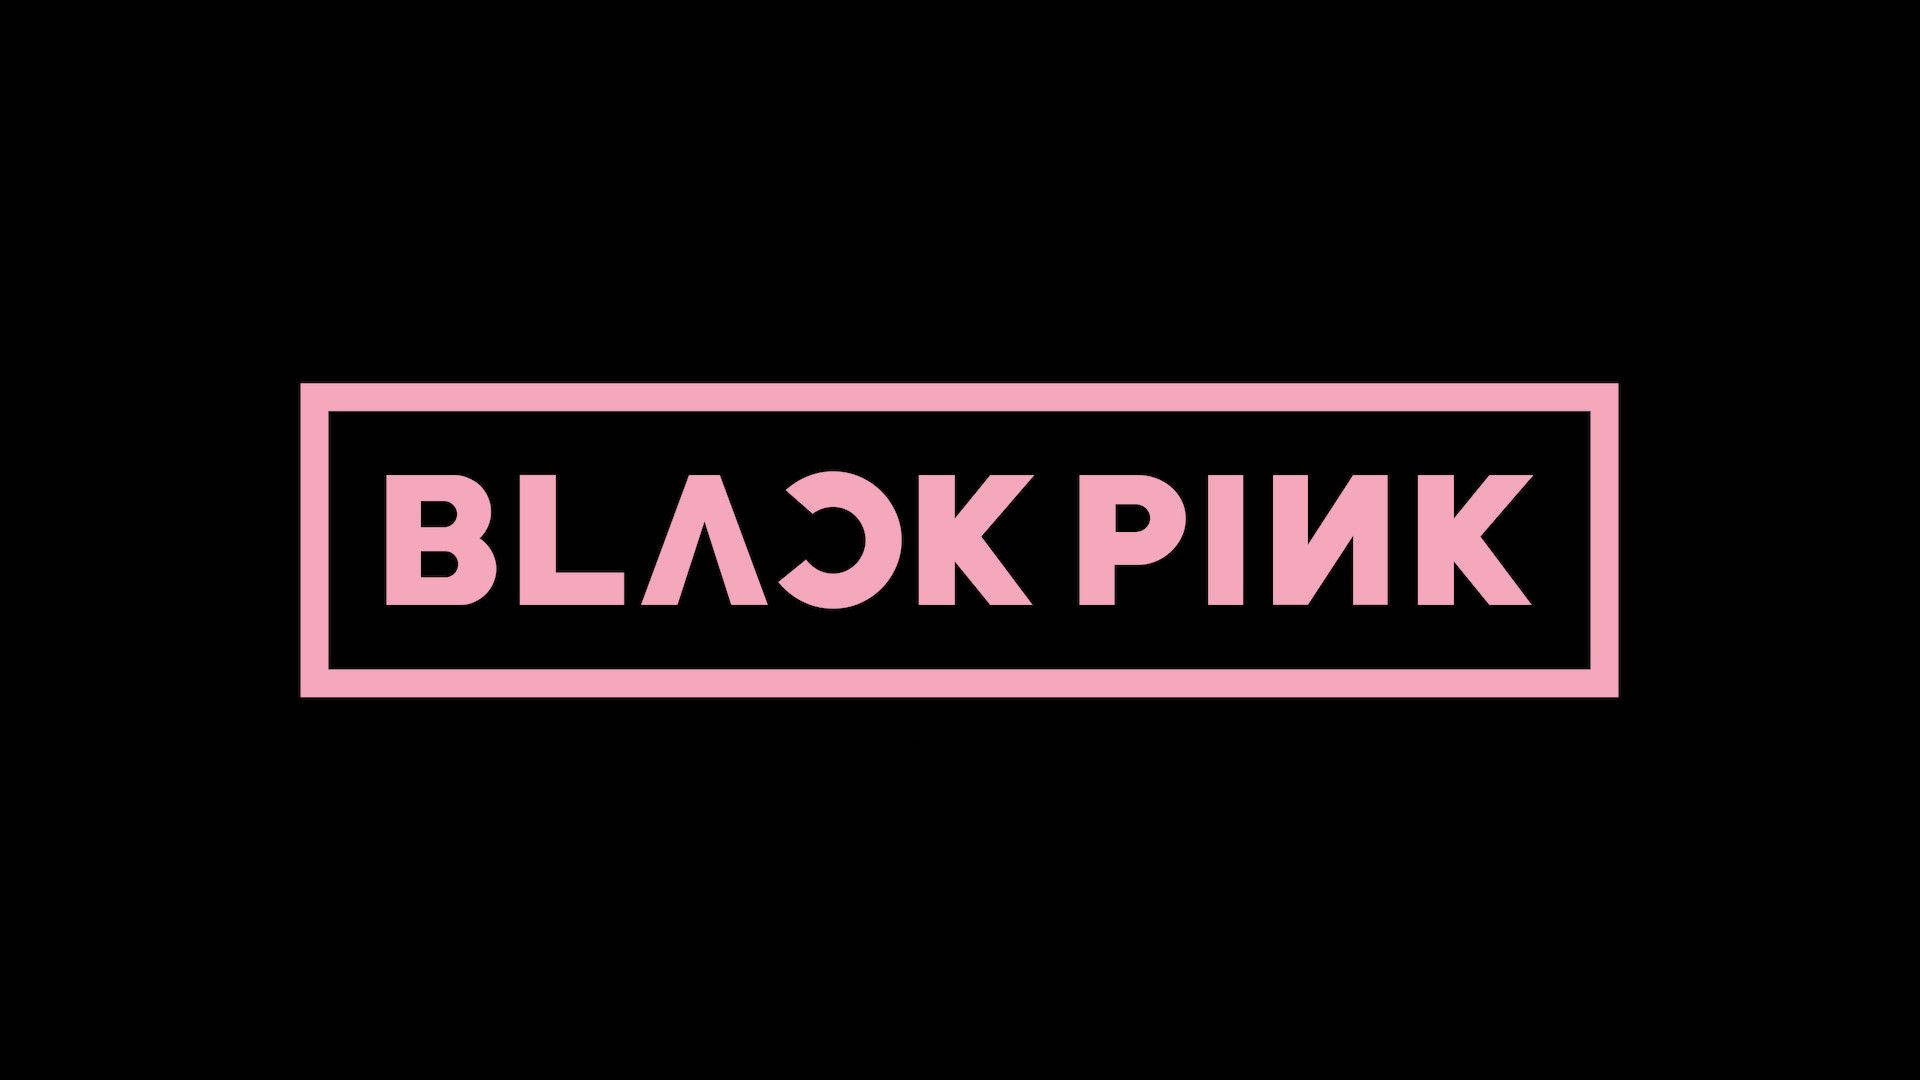 Original Blackpink Logo On Black Wallpaper